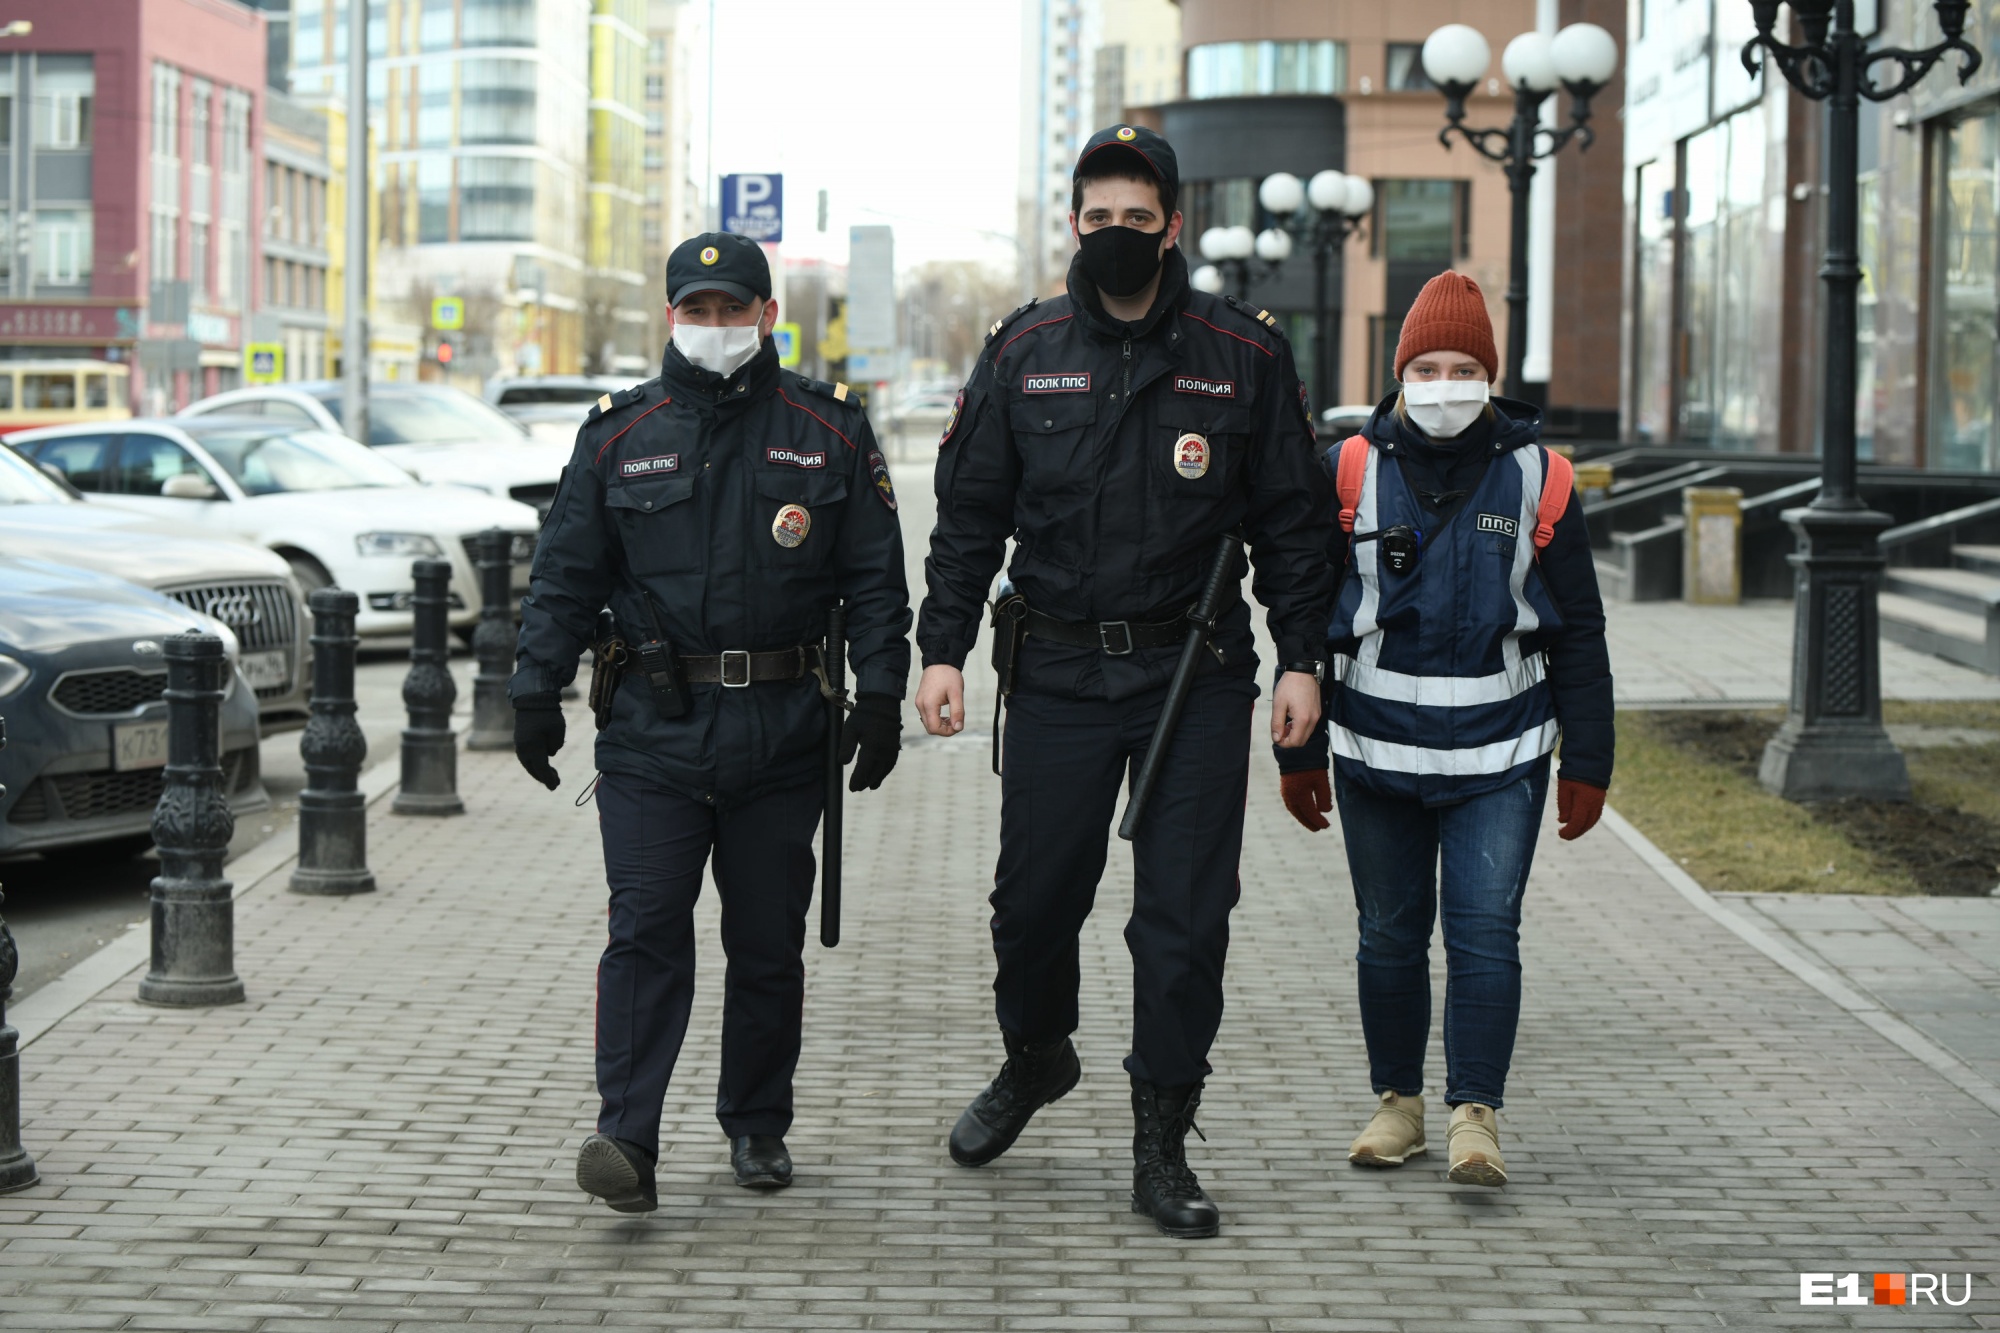 Сбежал из изоляции: в Екатеринбурге разыскивают мужчину с диагнозом «коронавирус»